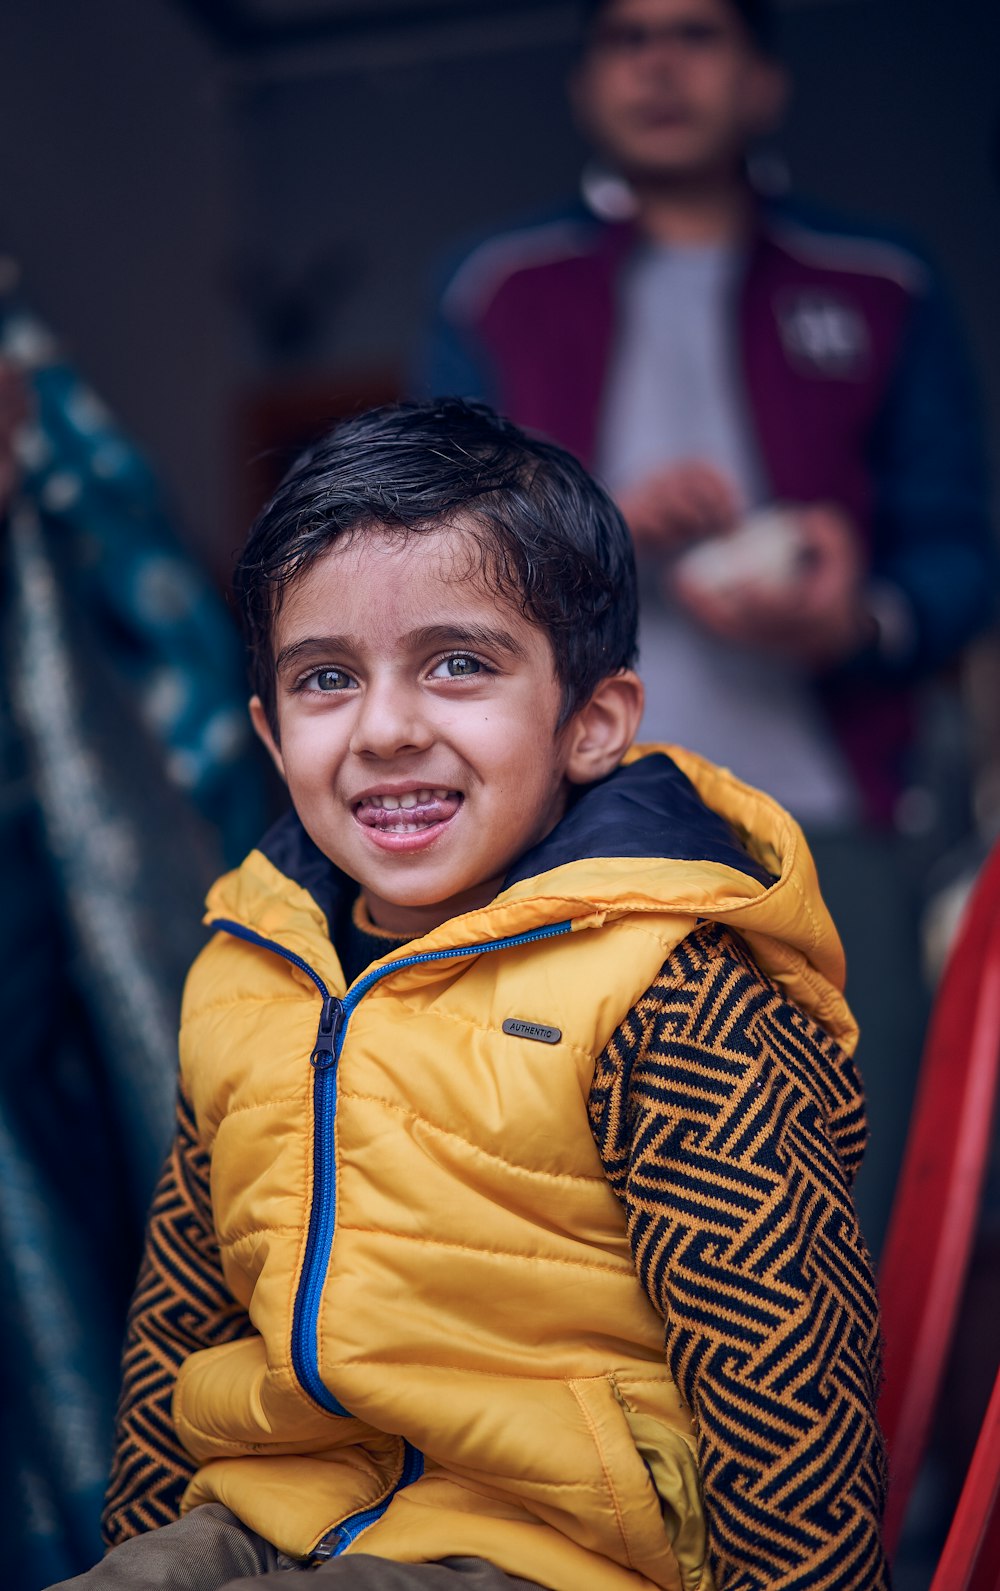 Foto niño con chaqueta amarilla y azul con cremallera sonriendo – Imagen Chico gratis en